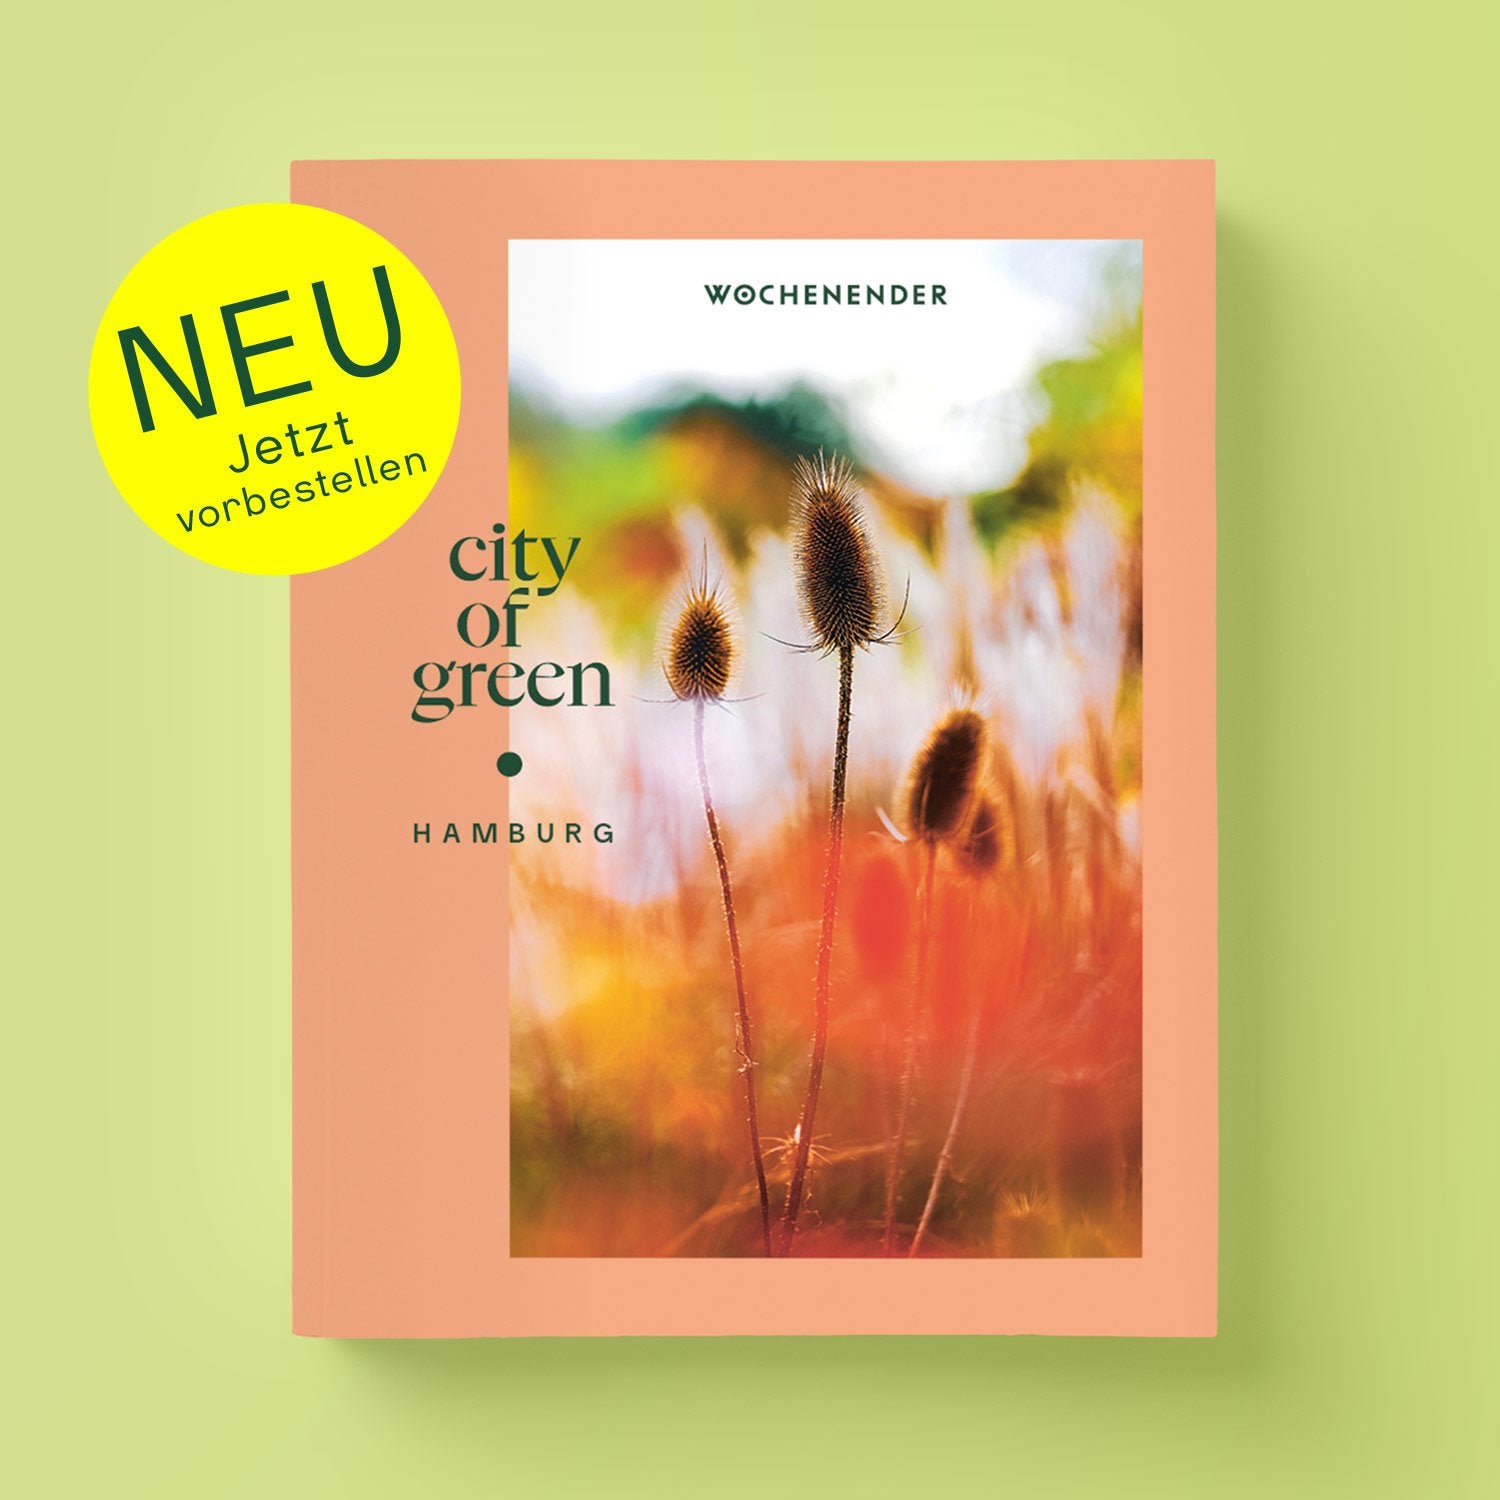 Wochenender: city of green - Natur in und um Hamburg